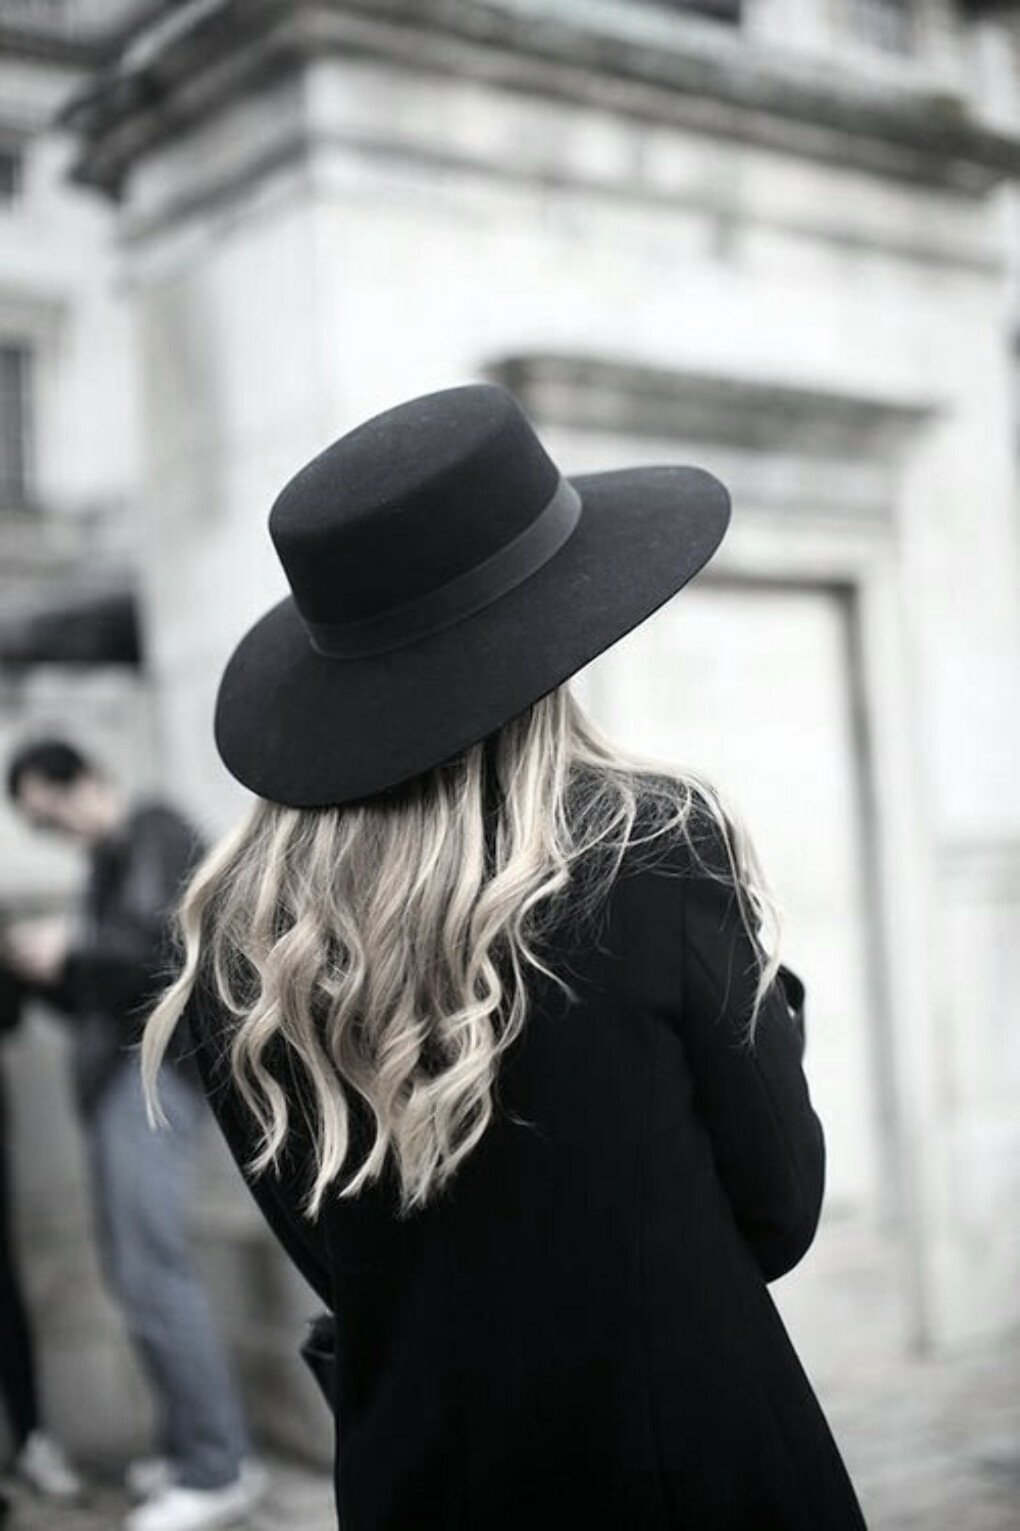 Черное пальто и шляпа